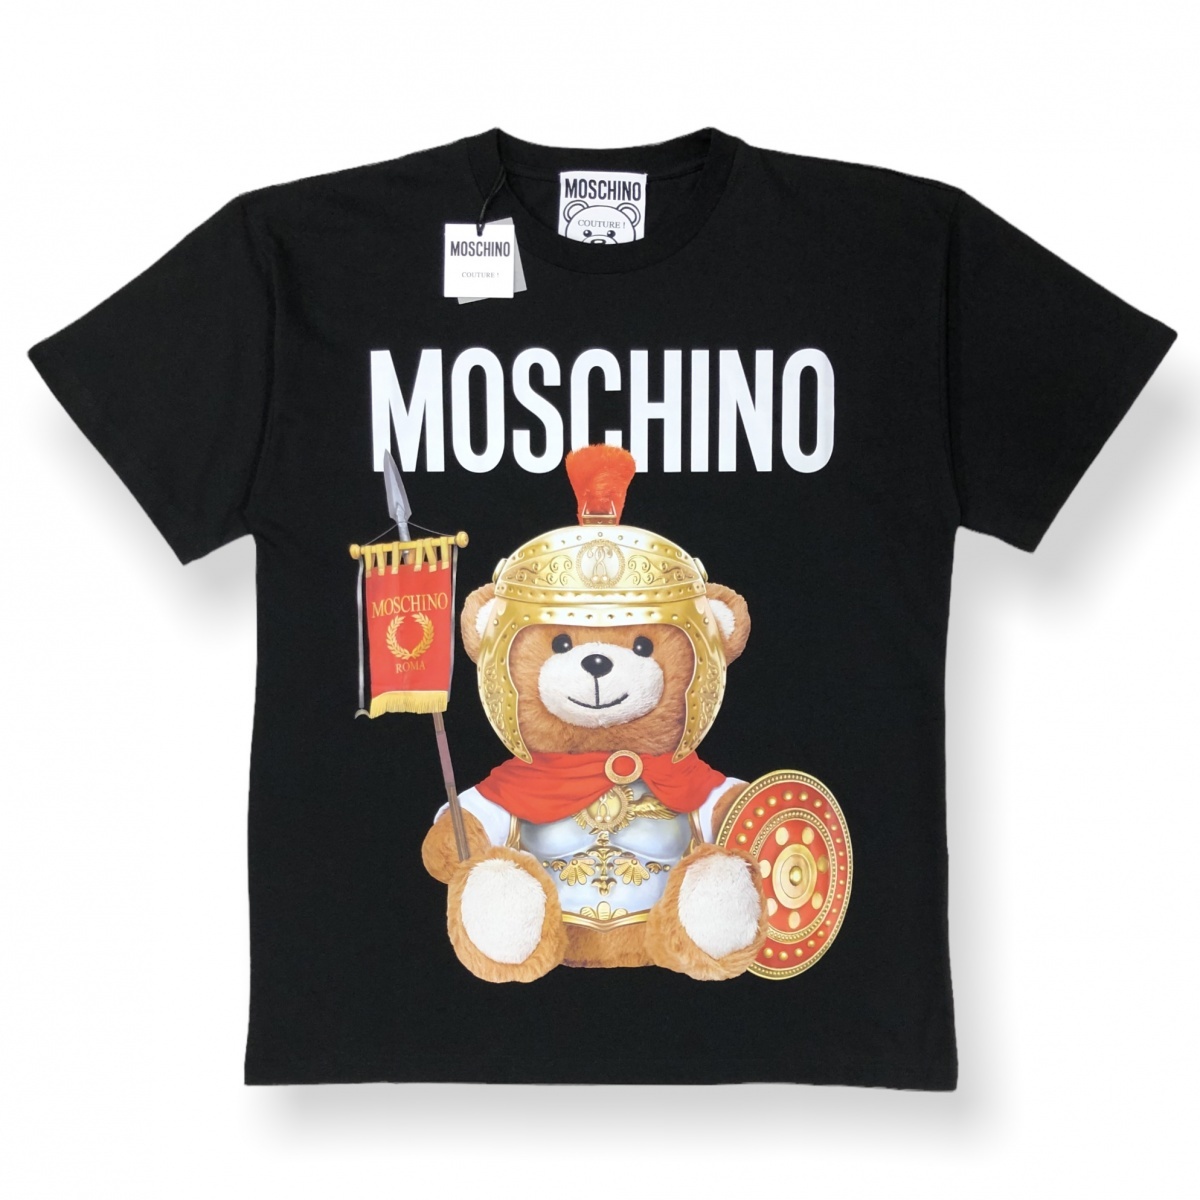 ヤフオク! -「moschino tシャツ」(モスキーノ) (む/め/も)の落札相場 